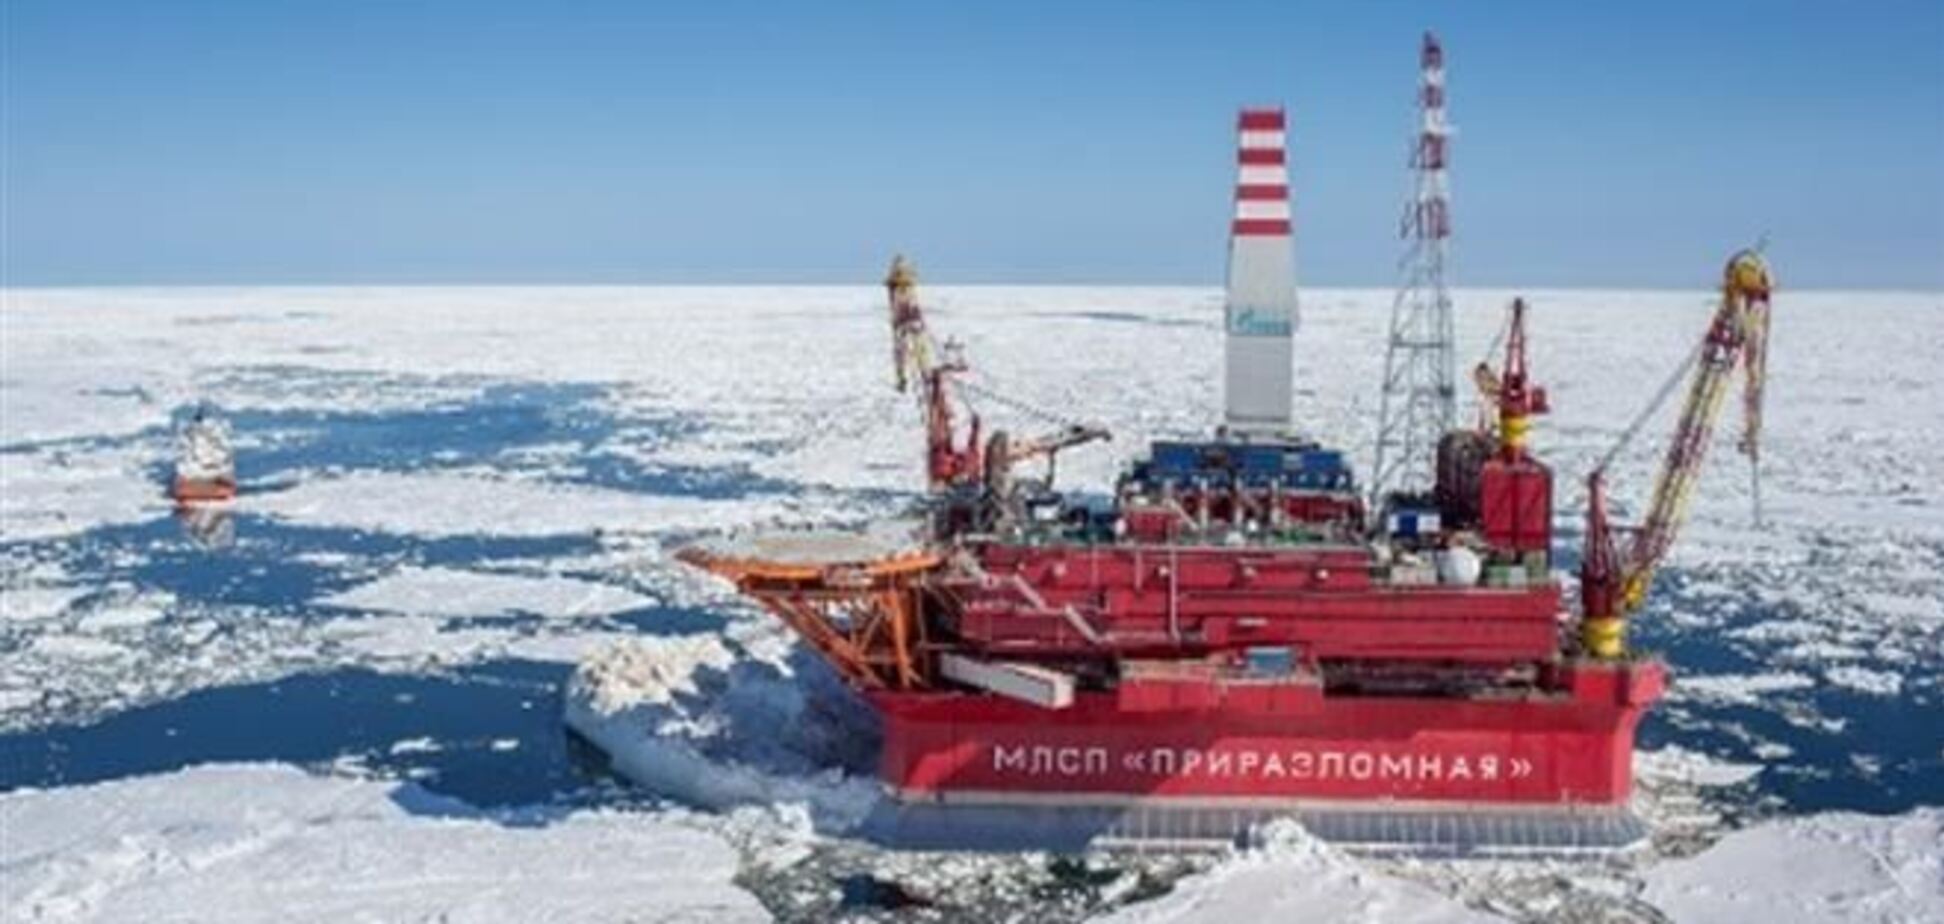 'Газпром' начал добывать нефть в Арктике